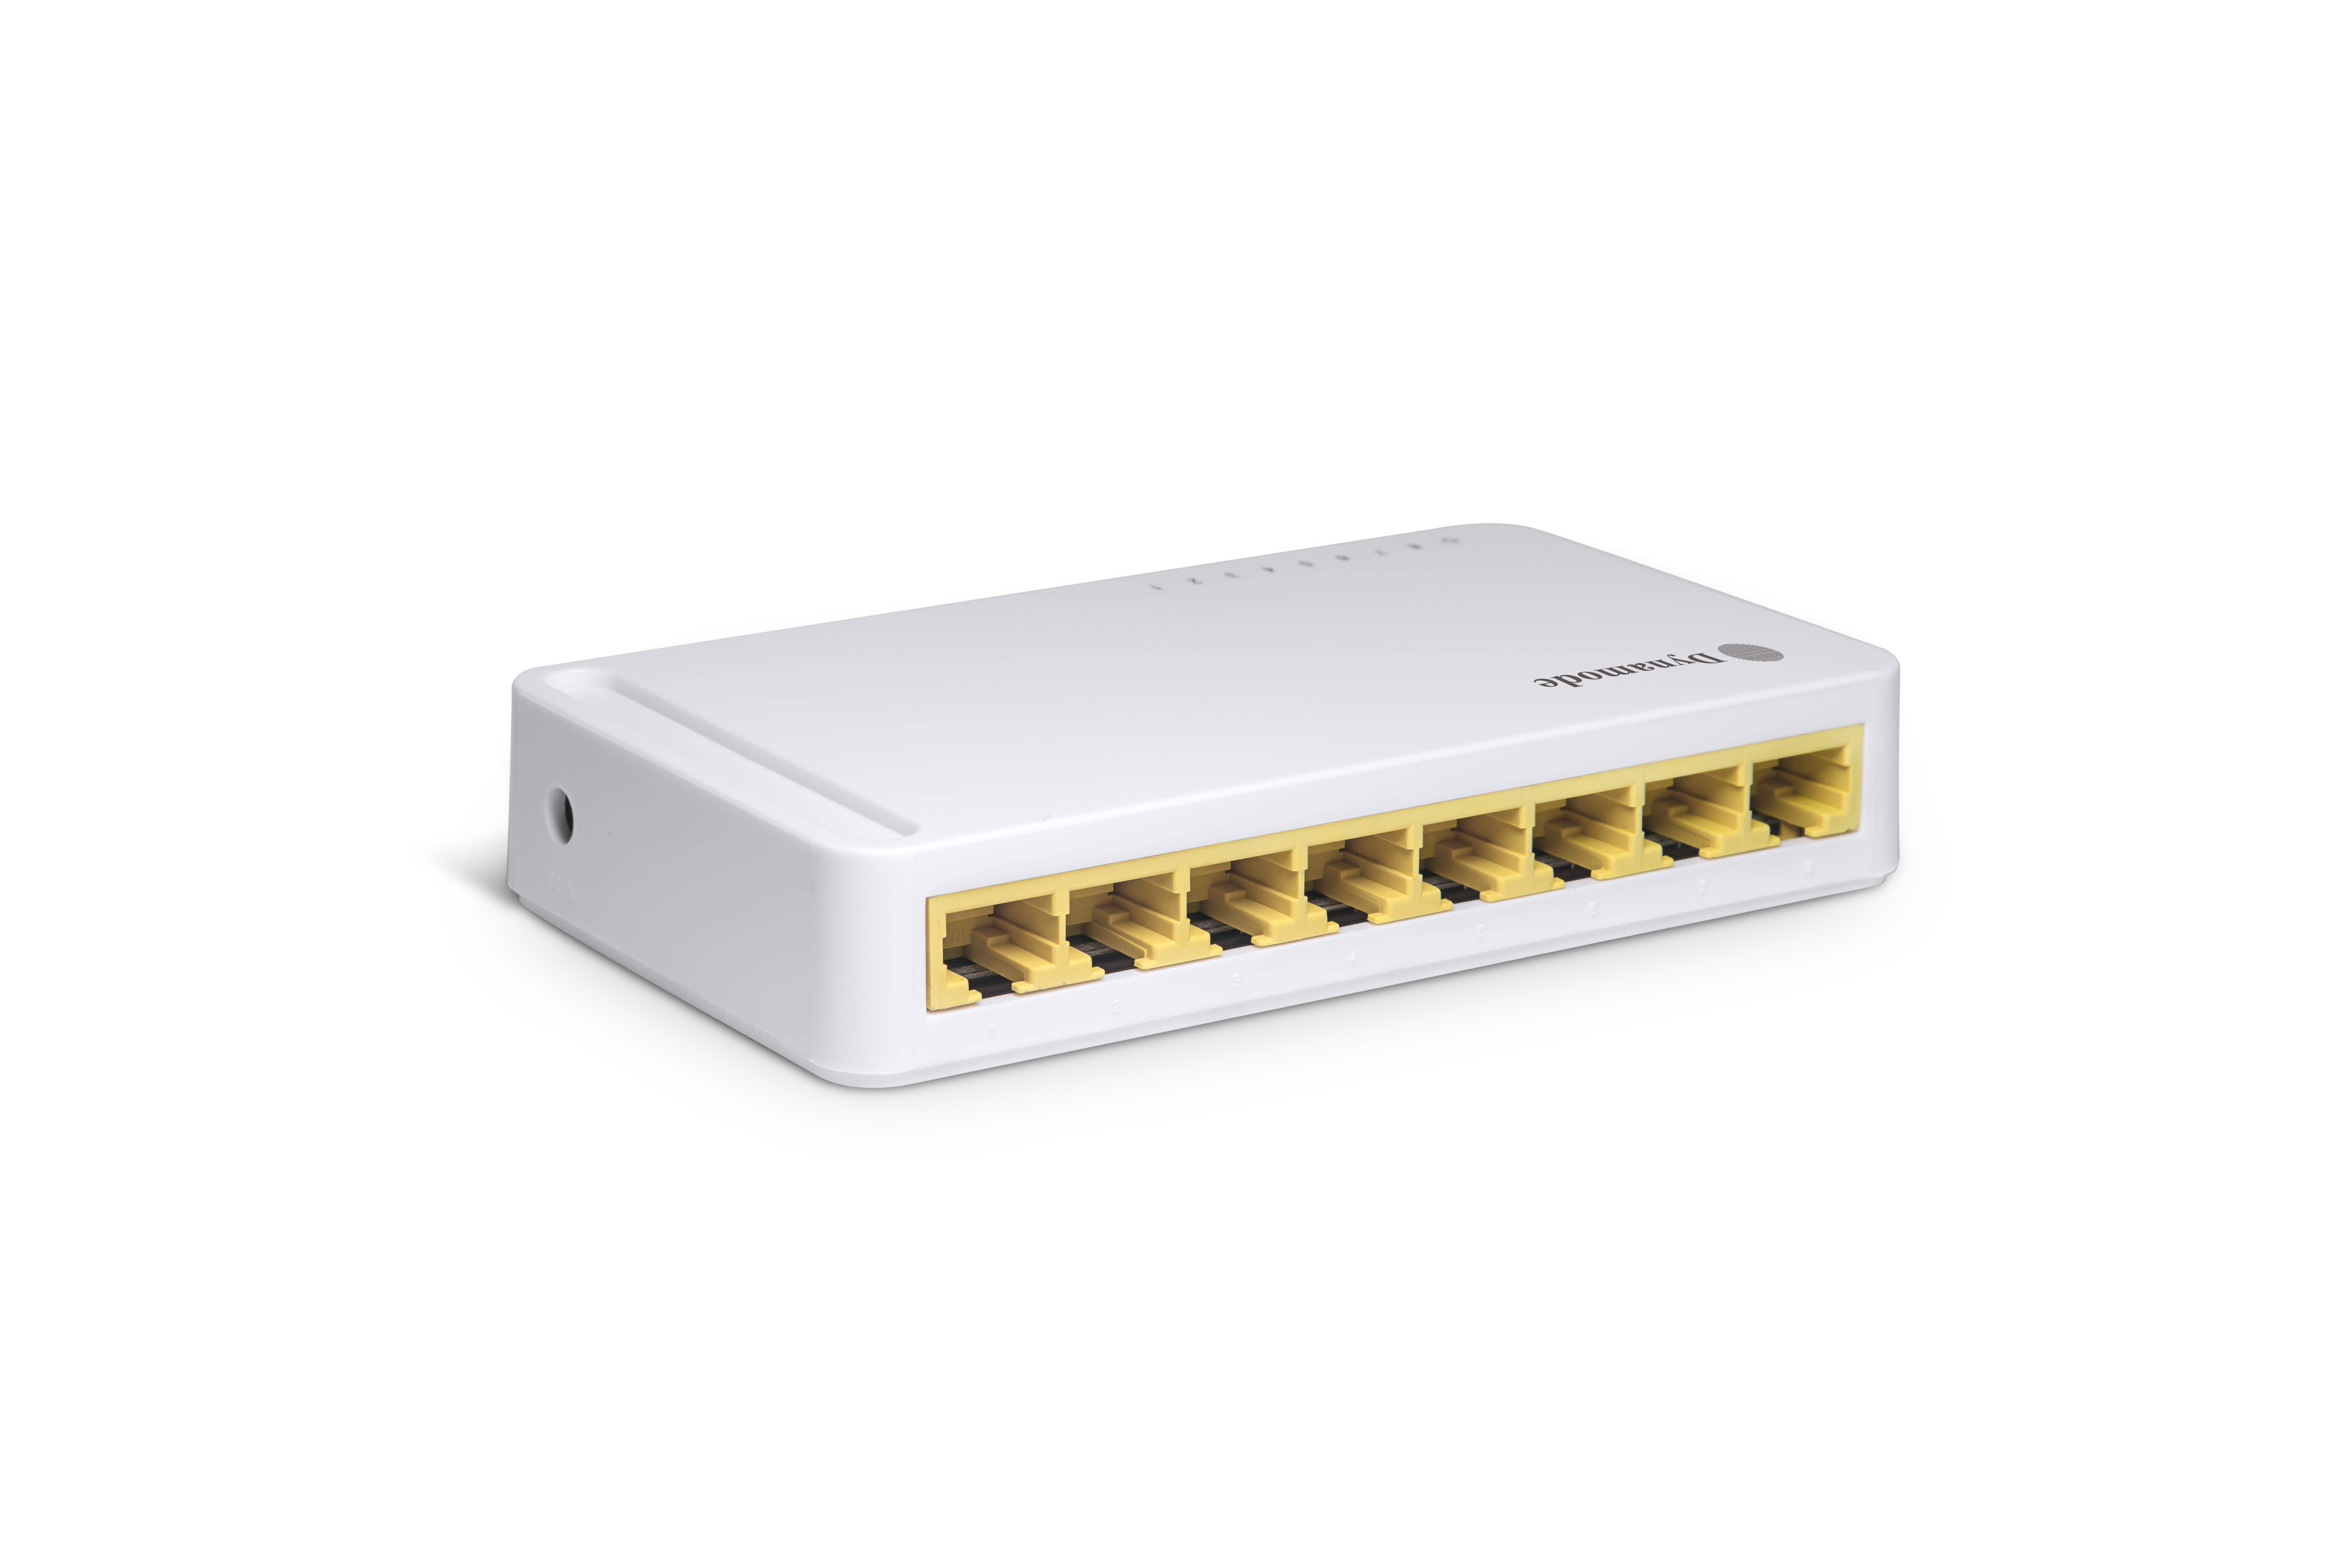 SG1008: Desk gigabit 8 port 10/100/1000Mbps Ethernet Switch